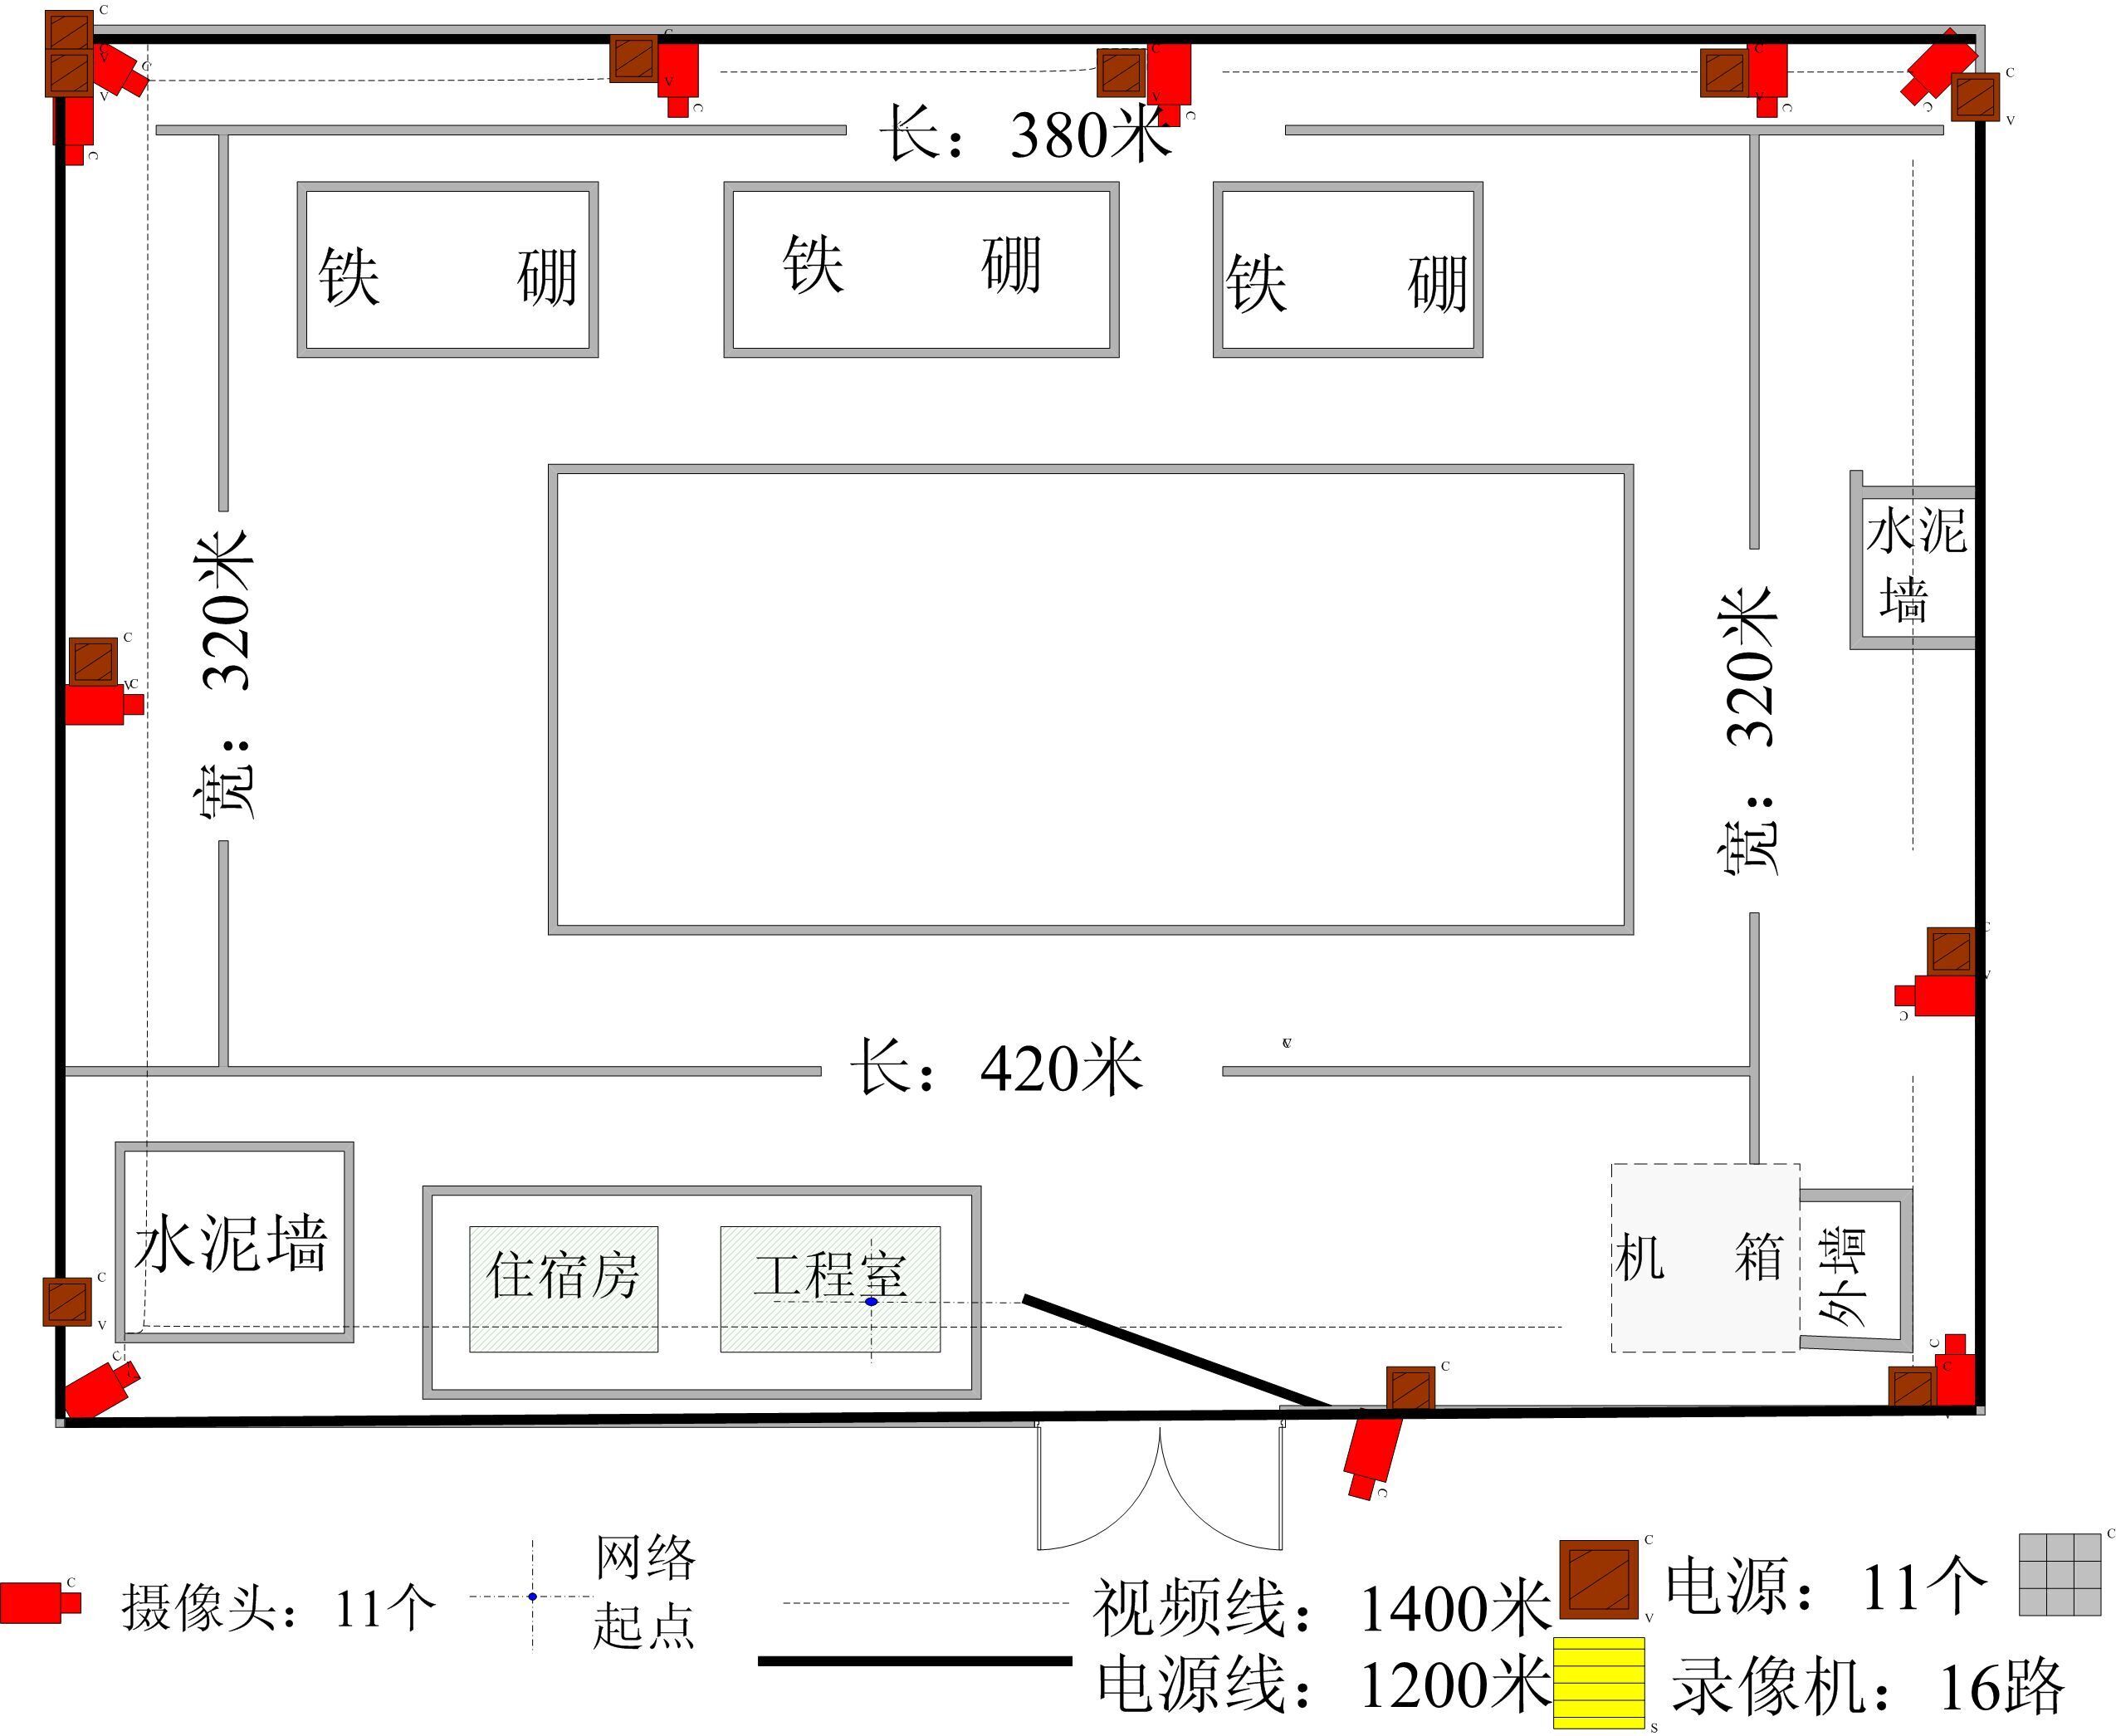 这是南珠总站的大业集团监控设计图